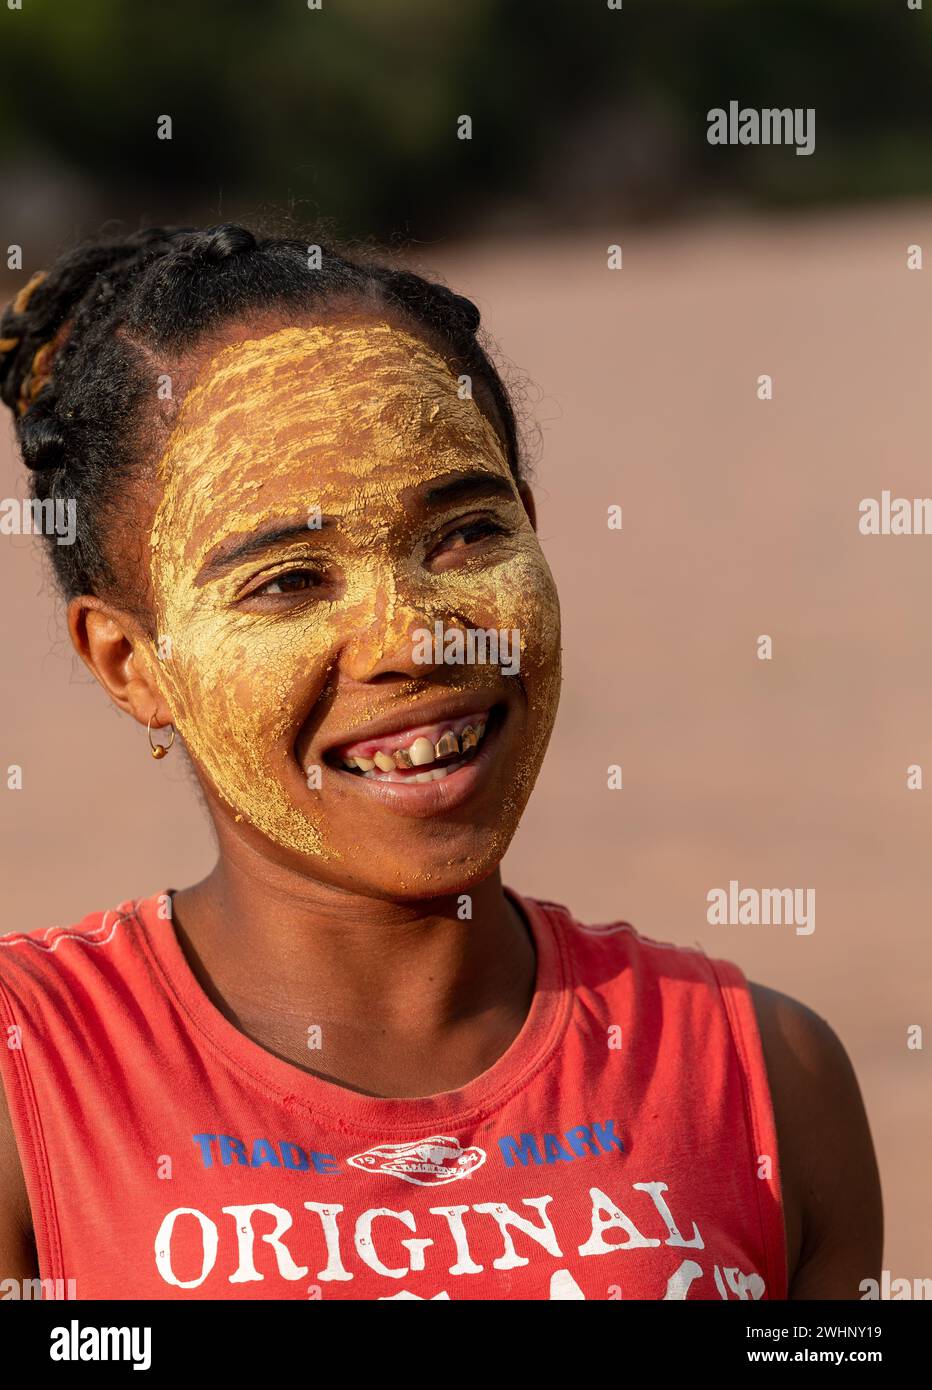 Femme malgache devant sa cabane avec un visage peint traditionnellement. Les femmes malgaches peignent leurs visages pour protéger leurs visages fr Banque D'Images